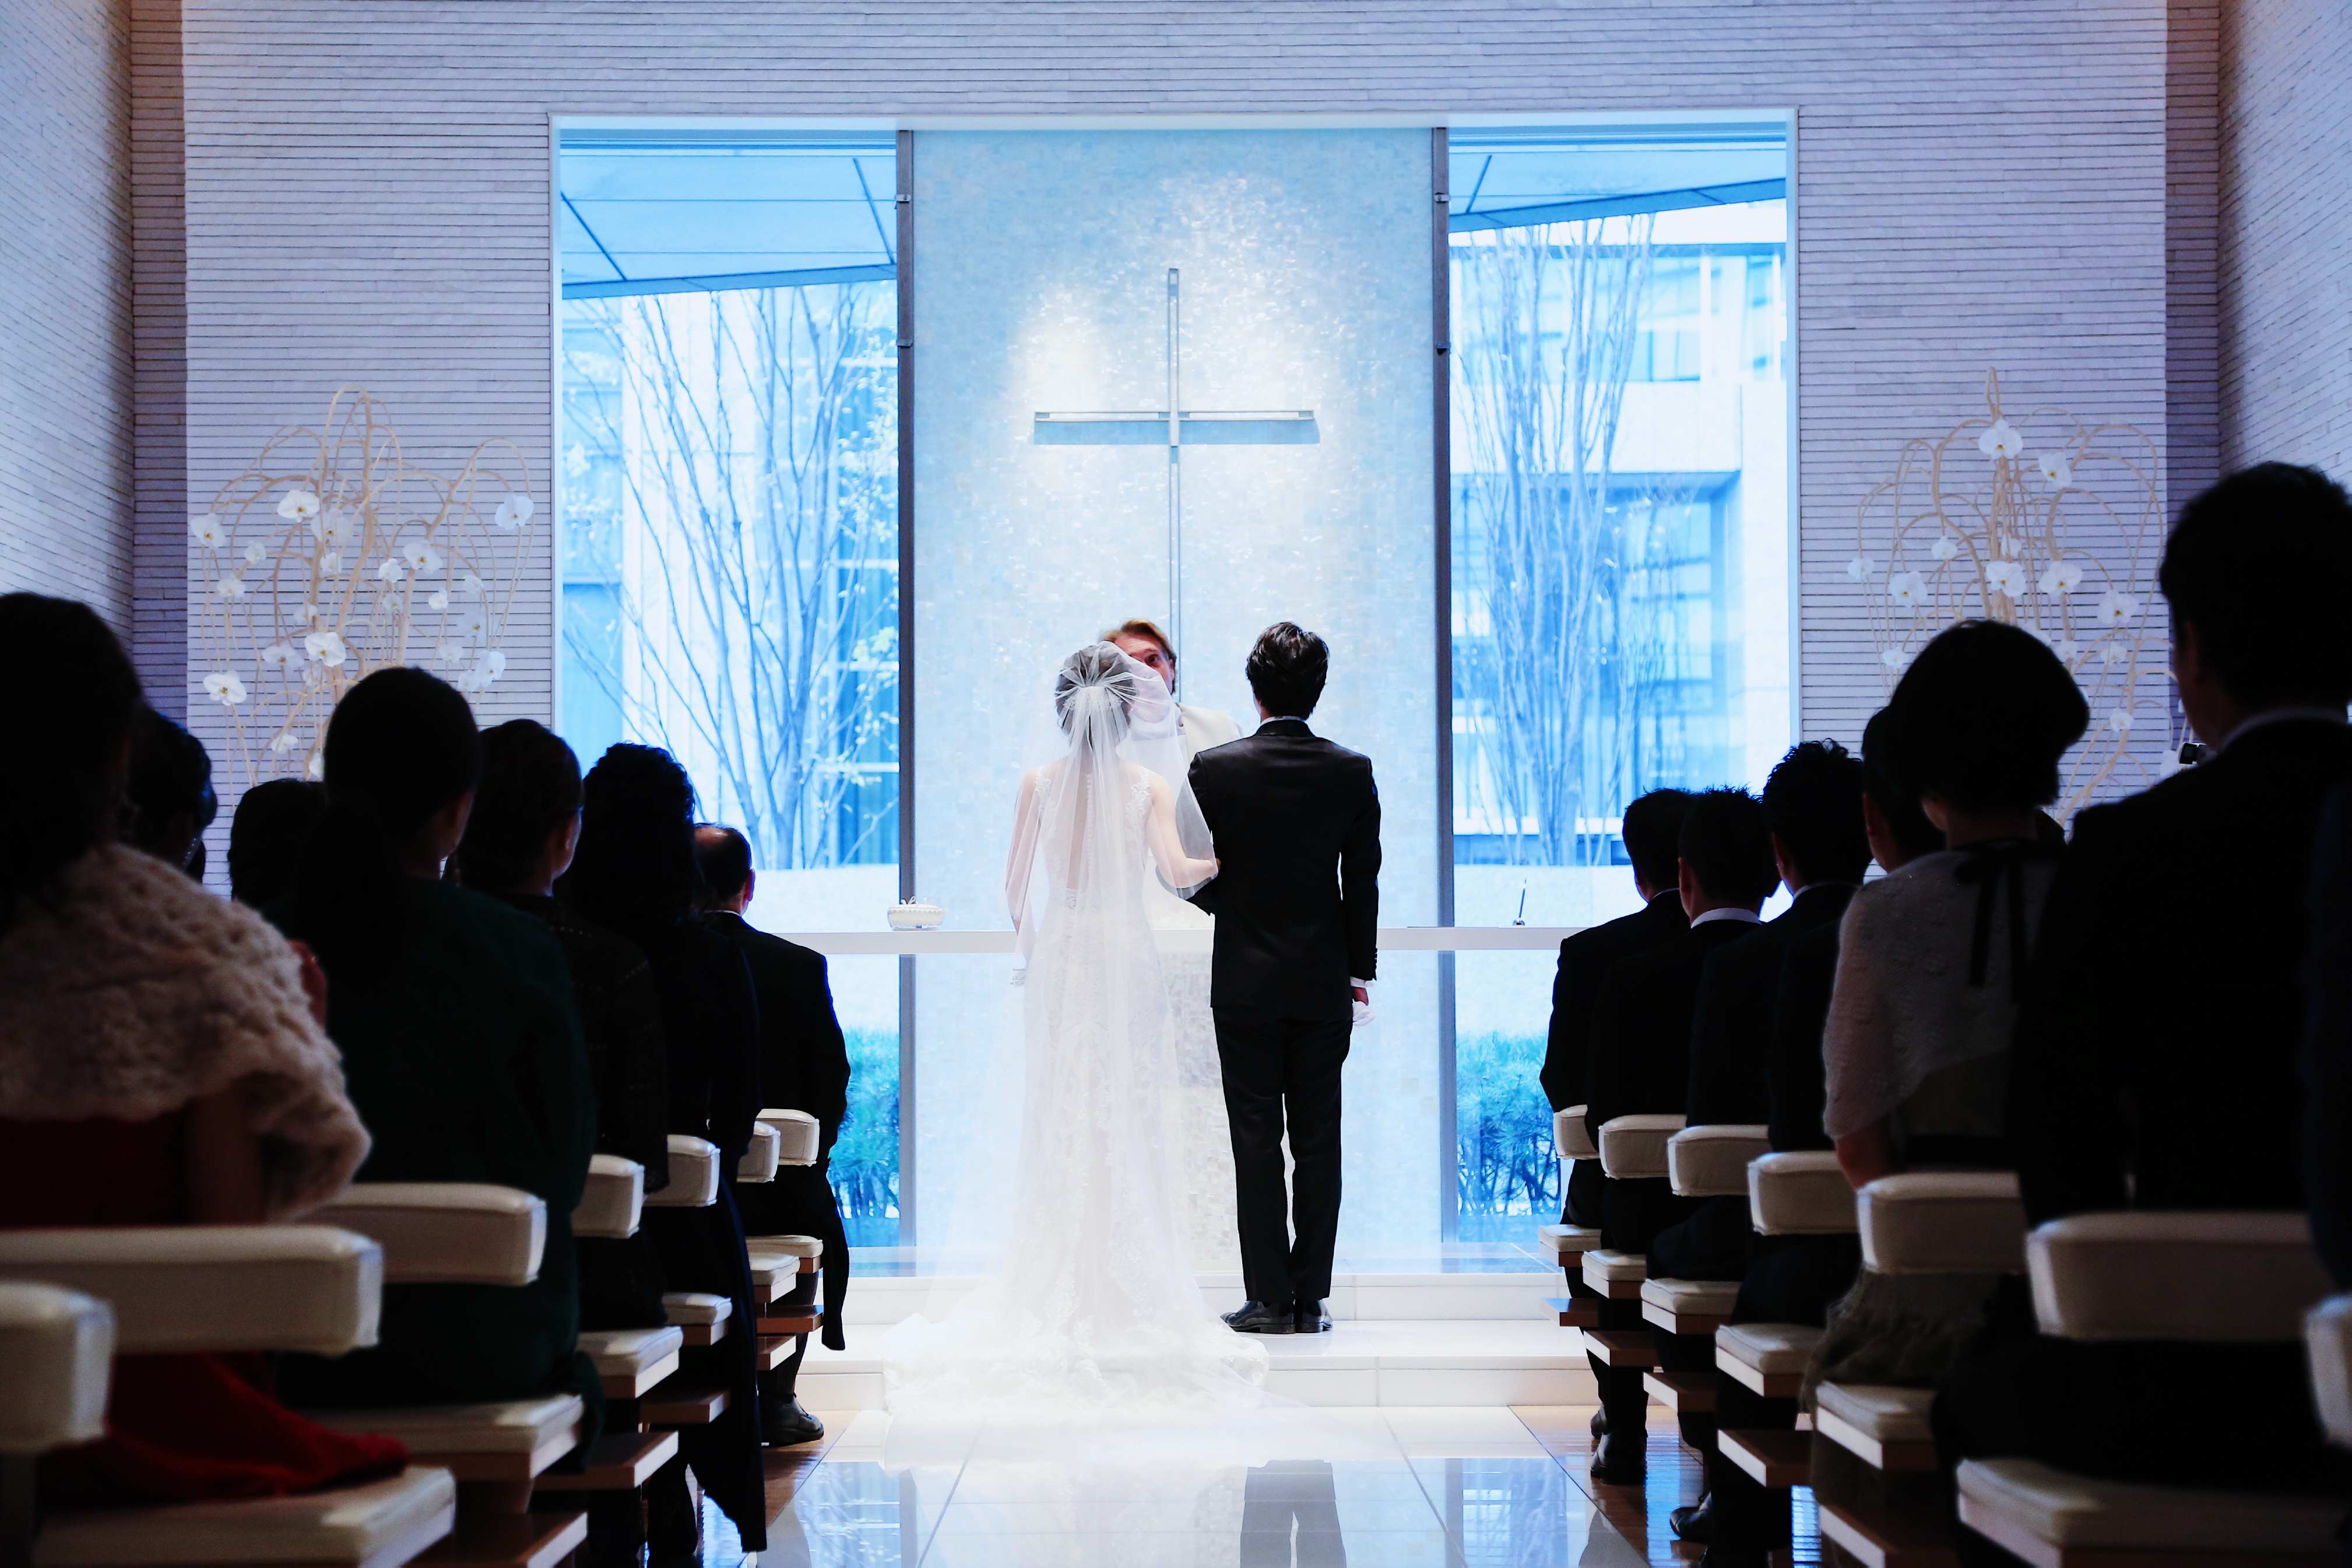 洗練された花嫁へ「ウェディングソムリエ」は人生でその時だけの特別な体験を提供するメディアです。